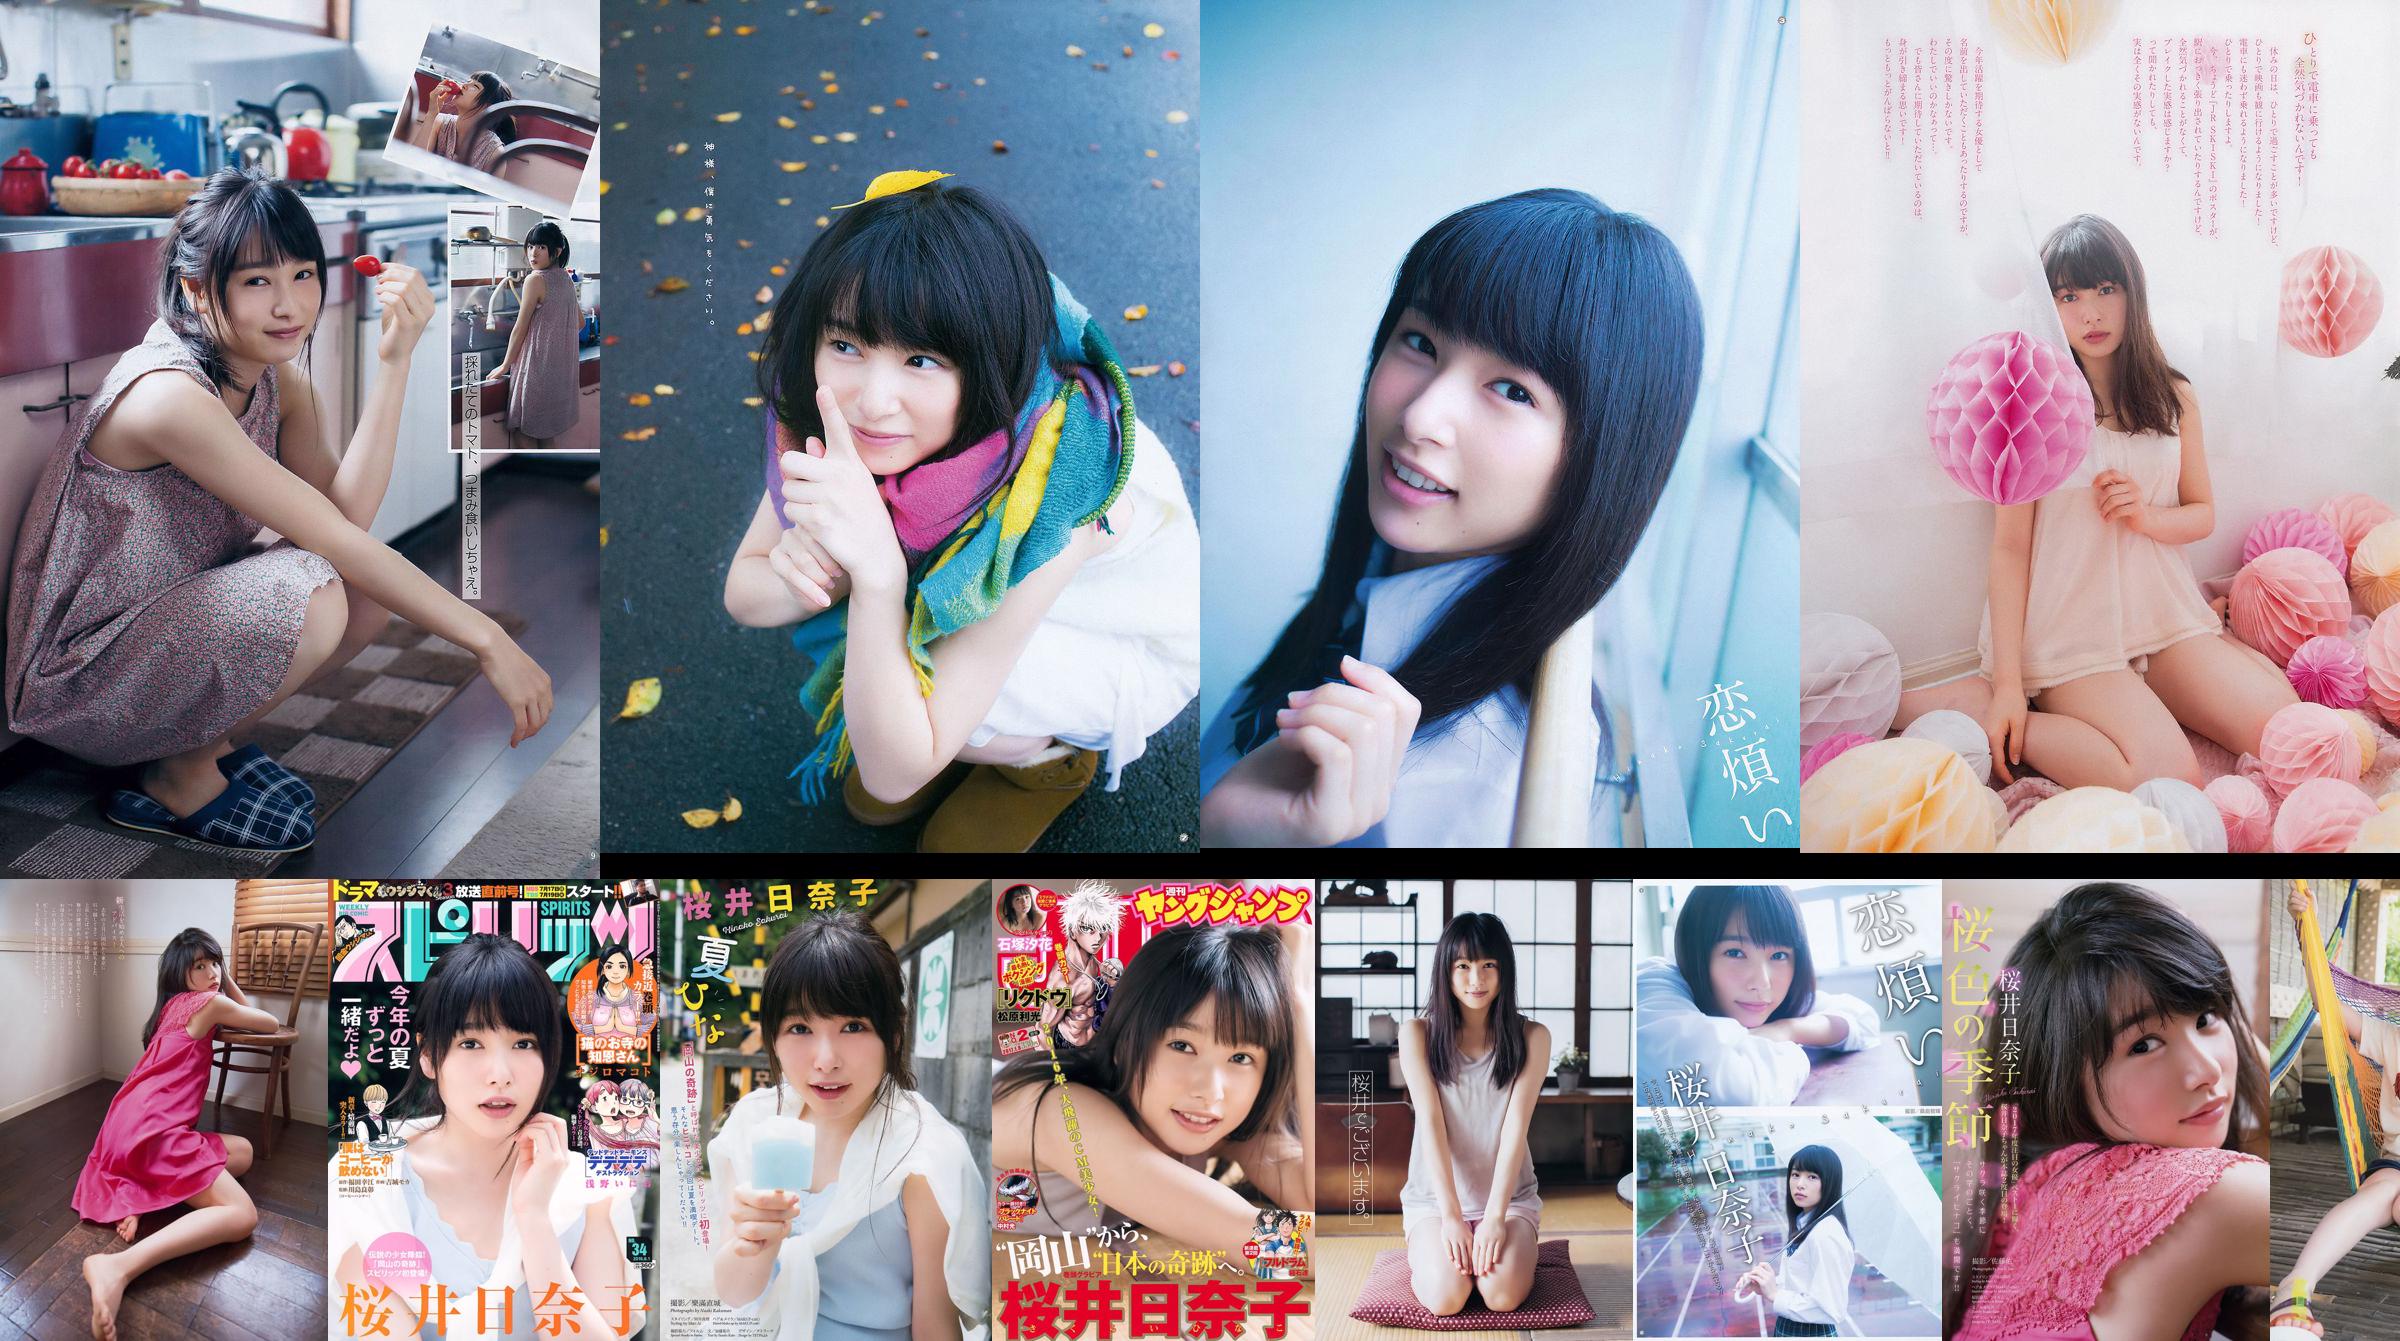 [Young Gangan] Sakurai Hinako 2015 No.22 Photo Magazine No.146968 Pagina 4